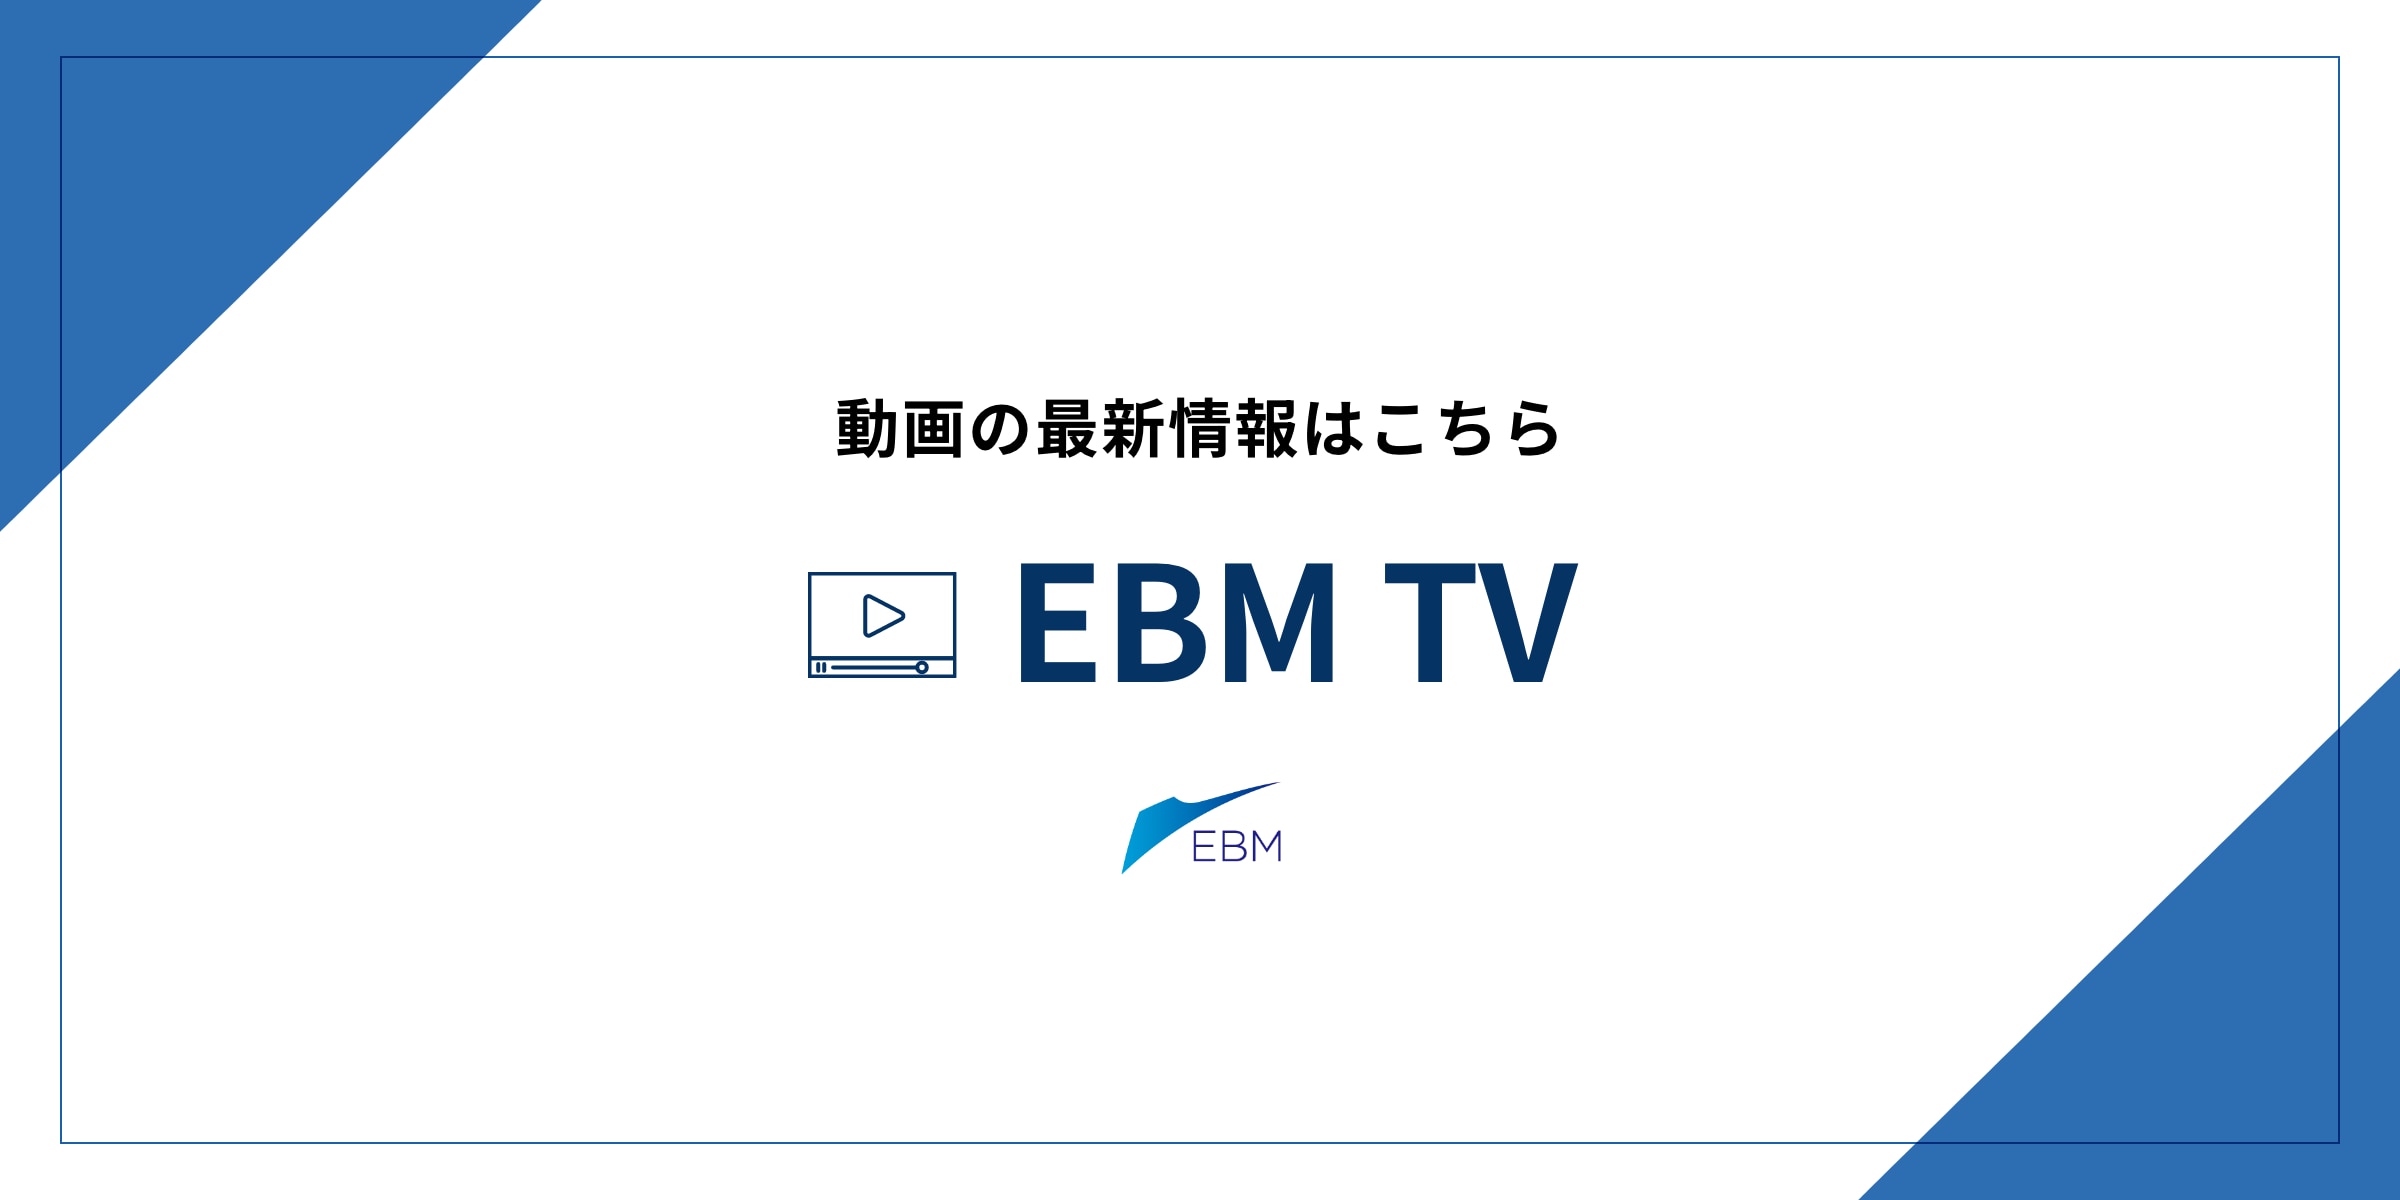 通过视频了解EBM TV